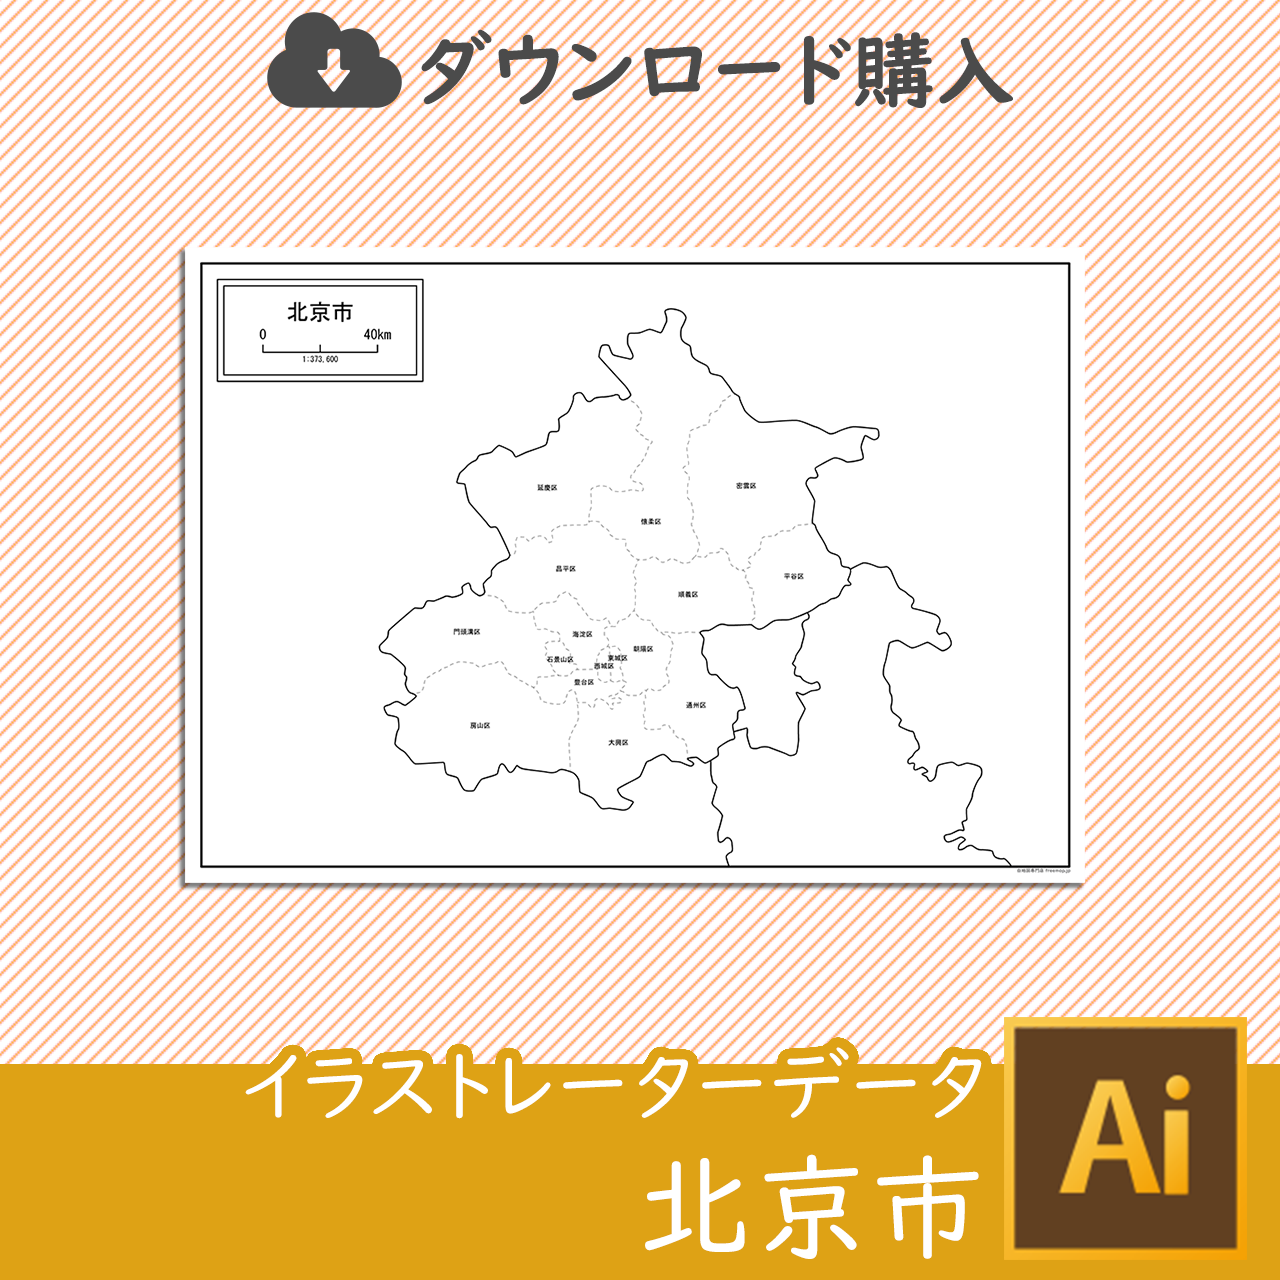 北京市の白地図データのサムネイル画像